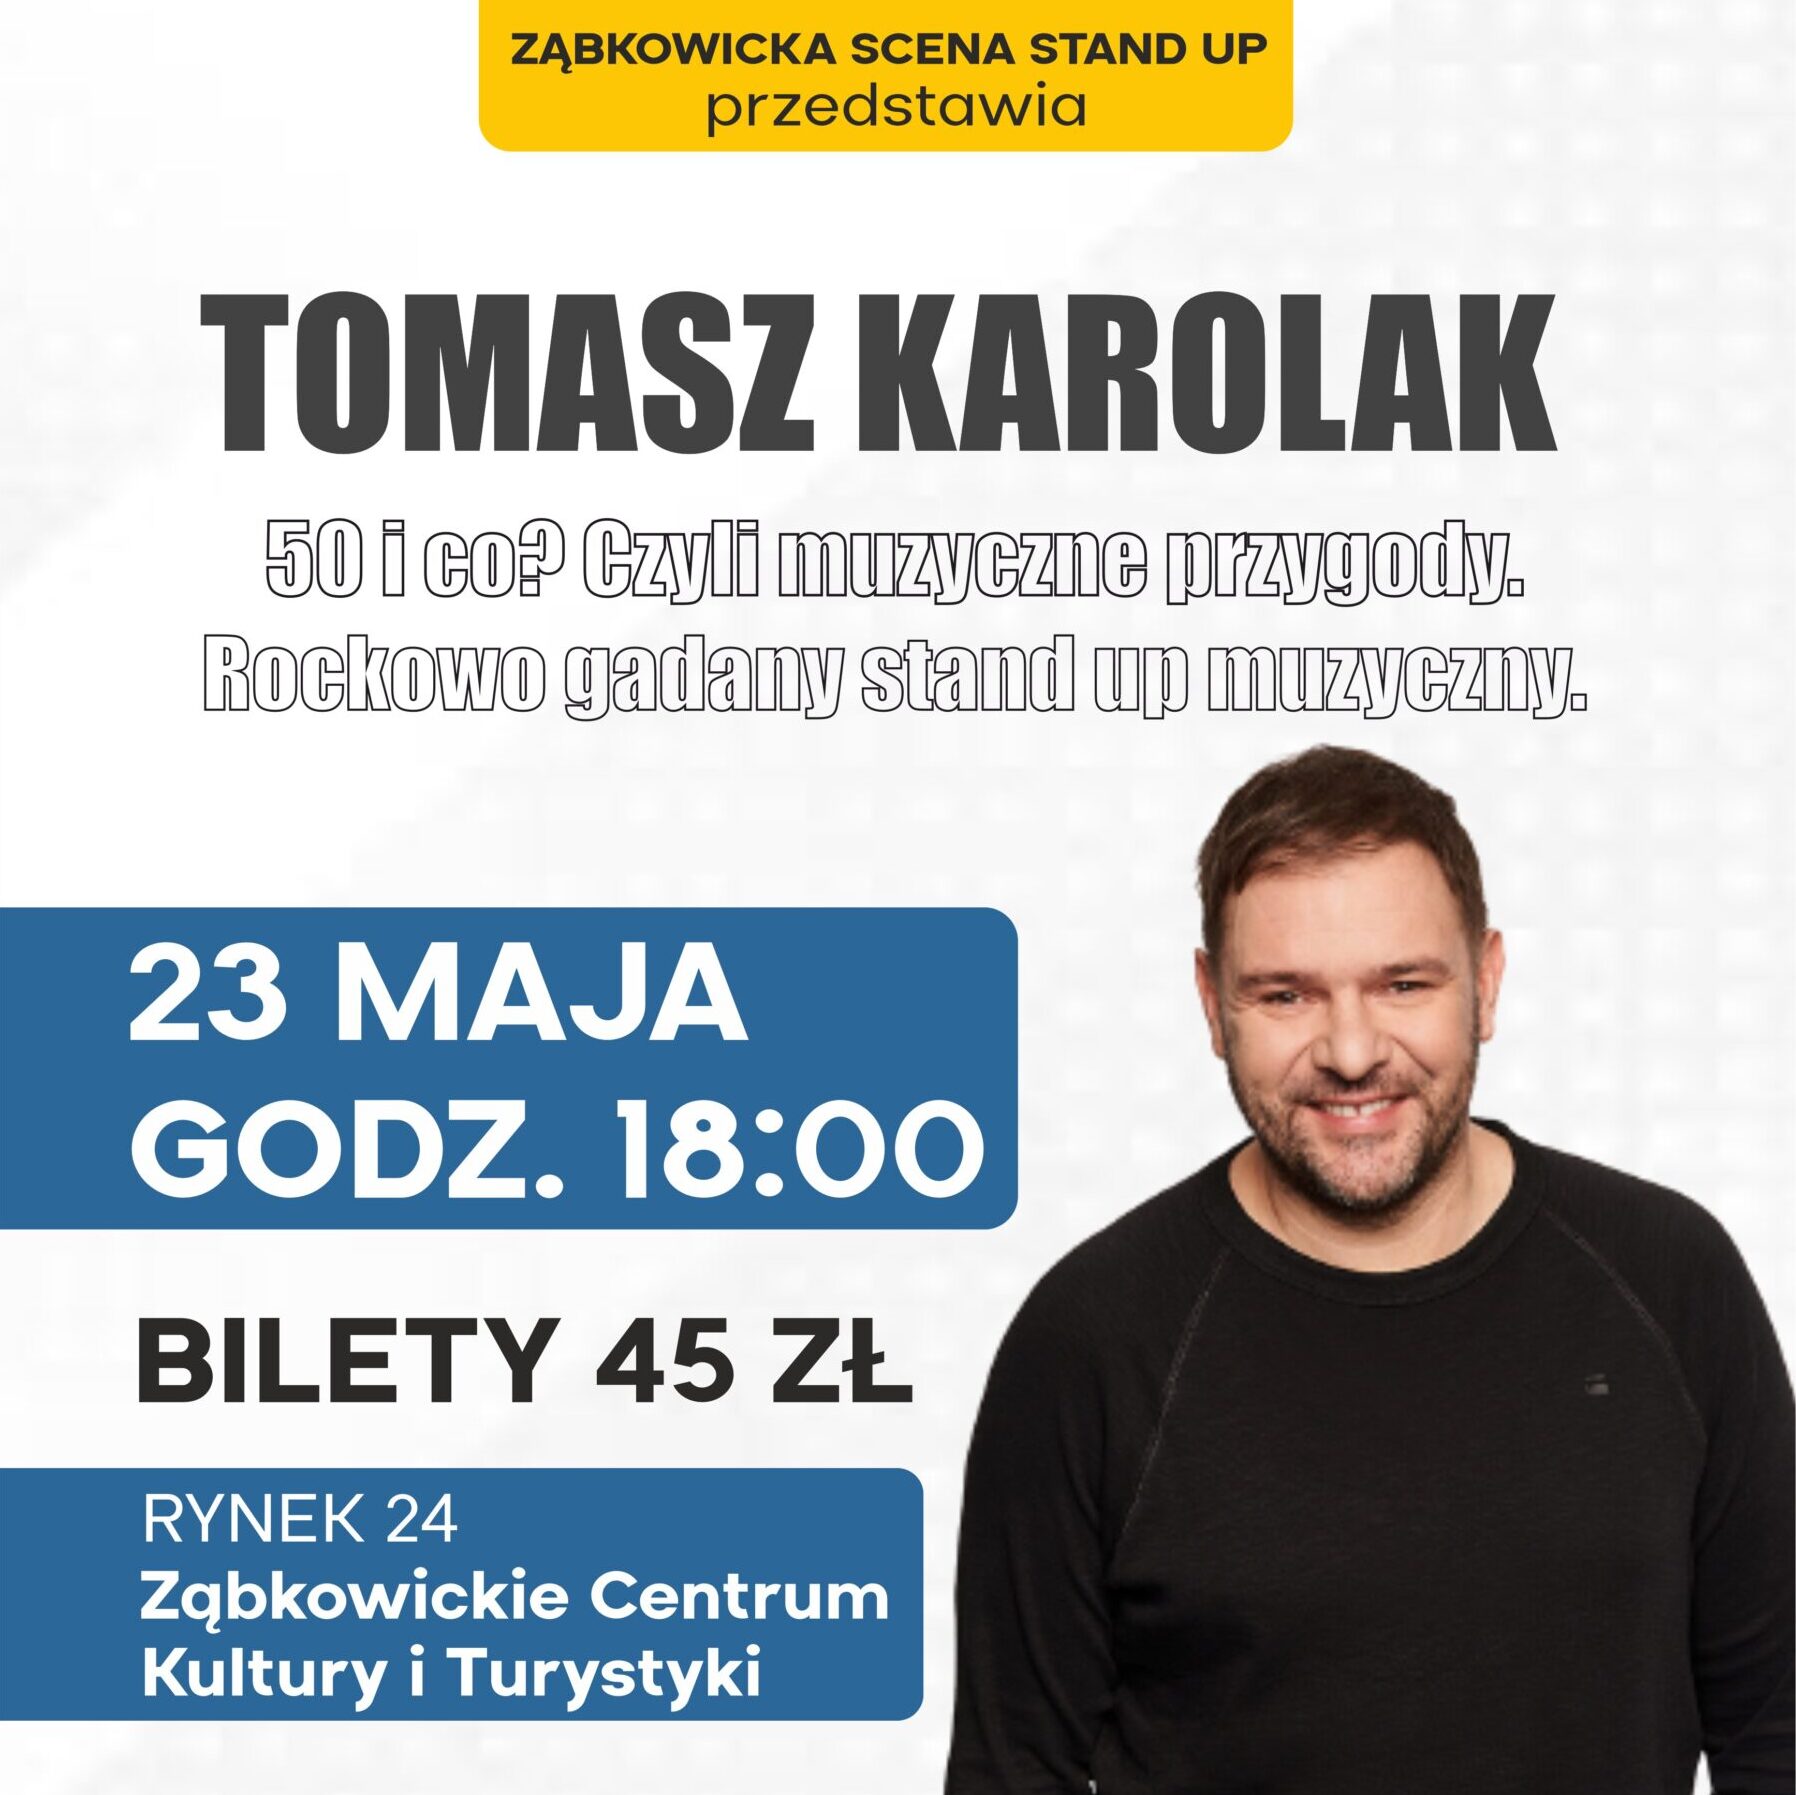 Plakat informujący o stand upie Tomasza Karolaka 23 maja o godzinie 18:00 w Ząbkowickim Centrum Kultury i Turystyki.